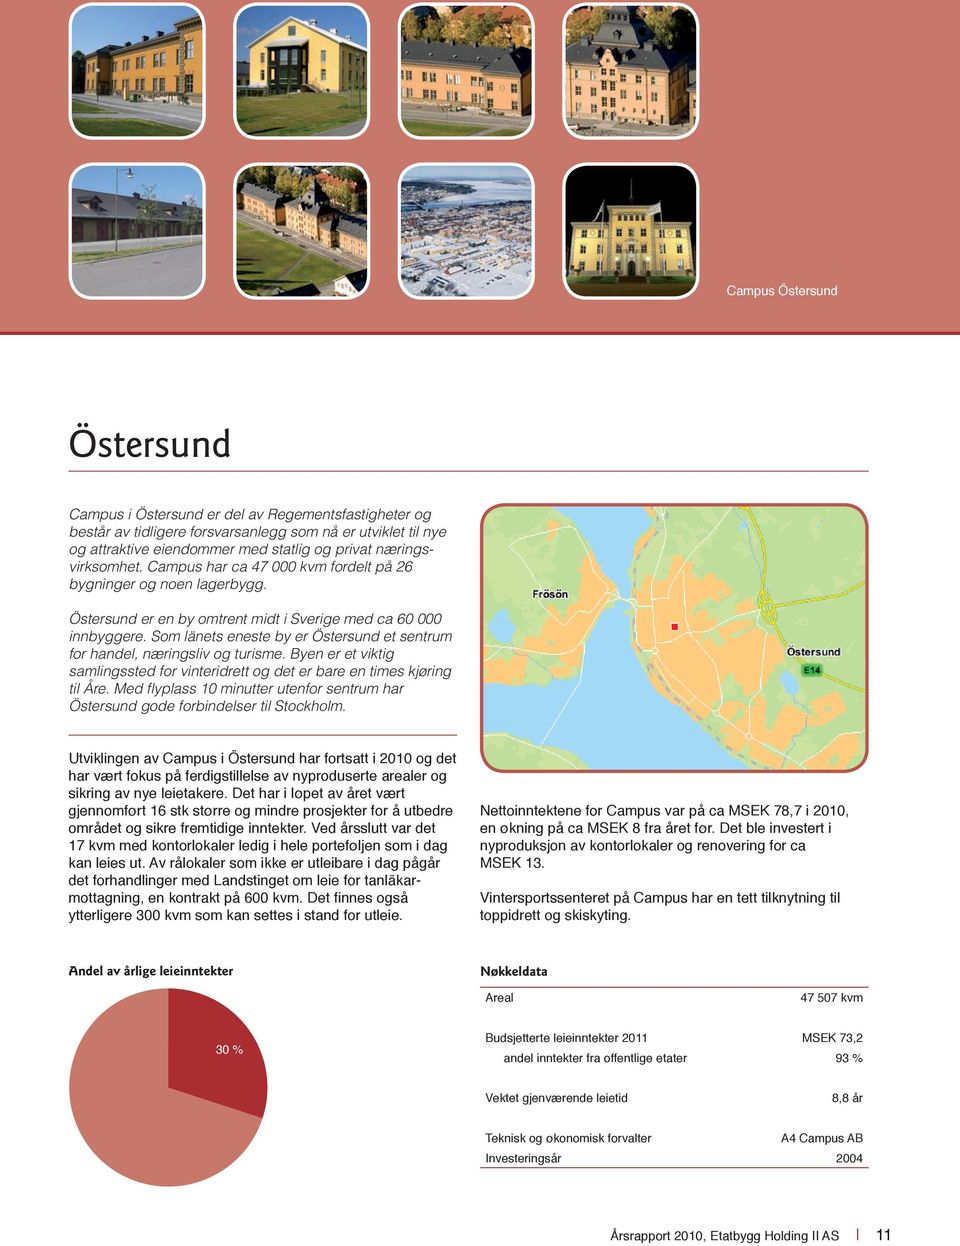 Som länets eneste by er Östersund et sentrum for handel, næringsliv og turisme. Byen er et viktig samlings sted for vinteridrett og det er bare en times kjøring til Åre.